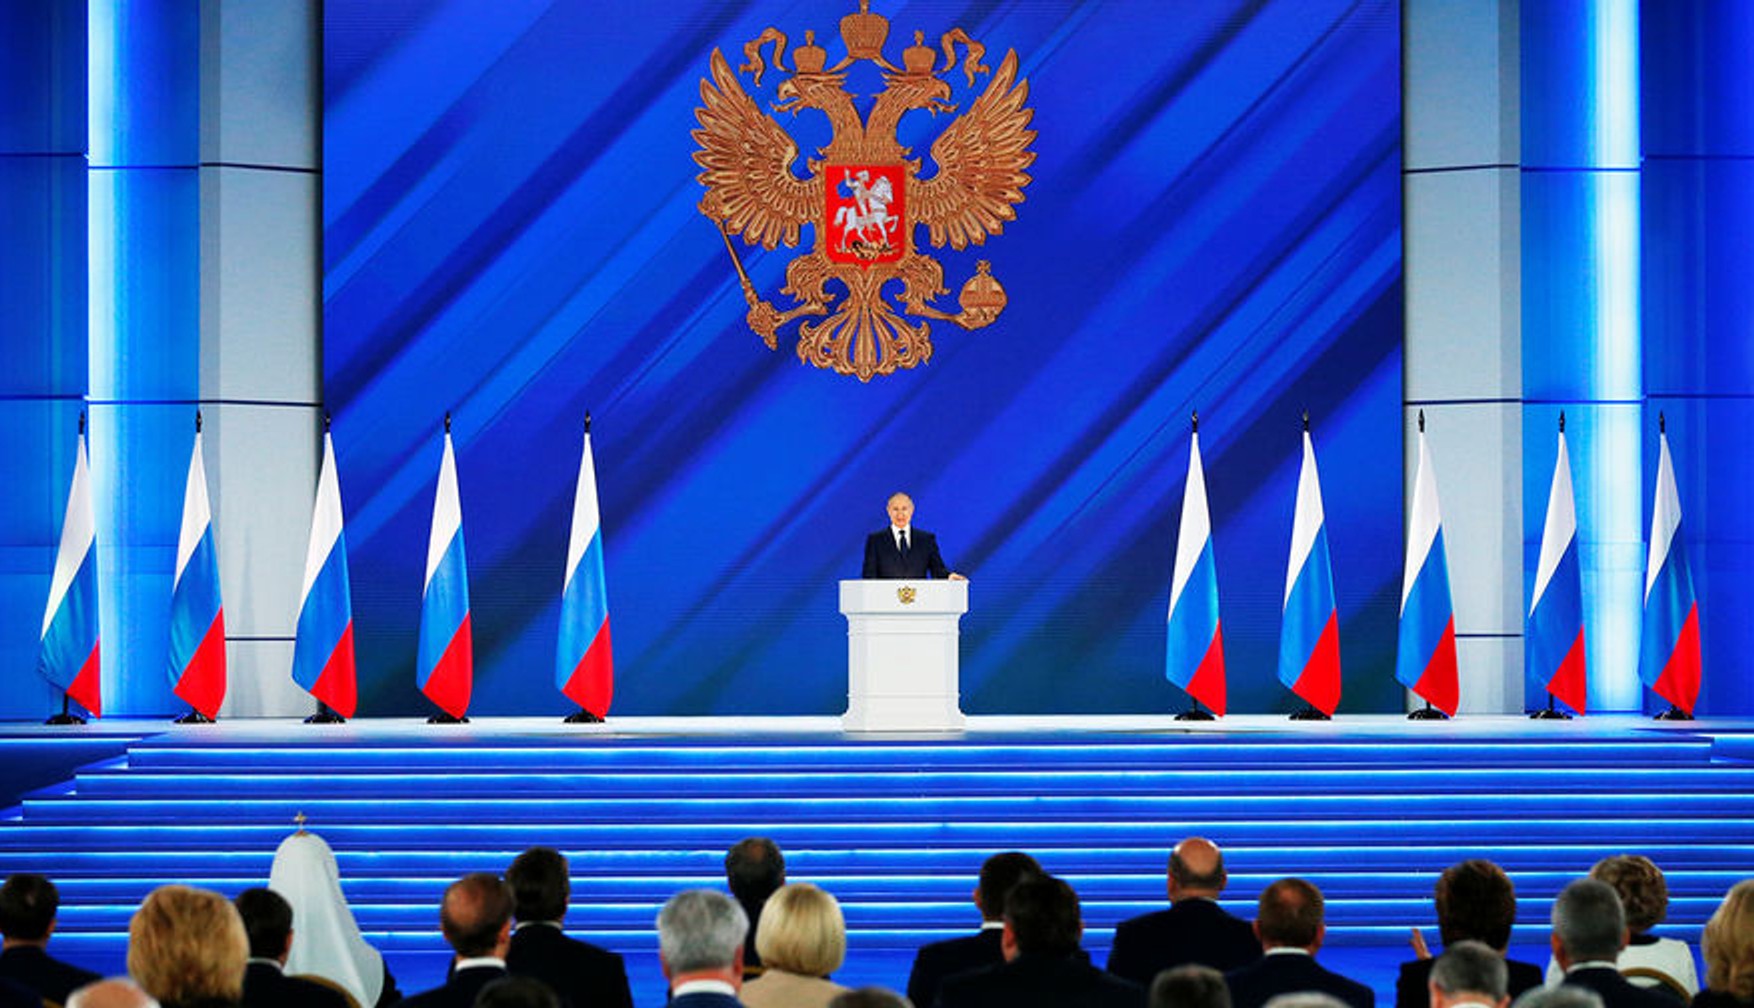 «Ъ»: Послание Путина Федеральному собранию перенесли на следующий год. Ранее он отменил «Прямую линию» и пресс-конференцию